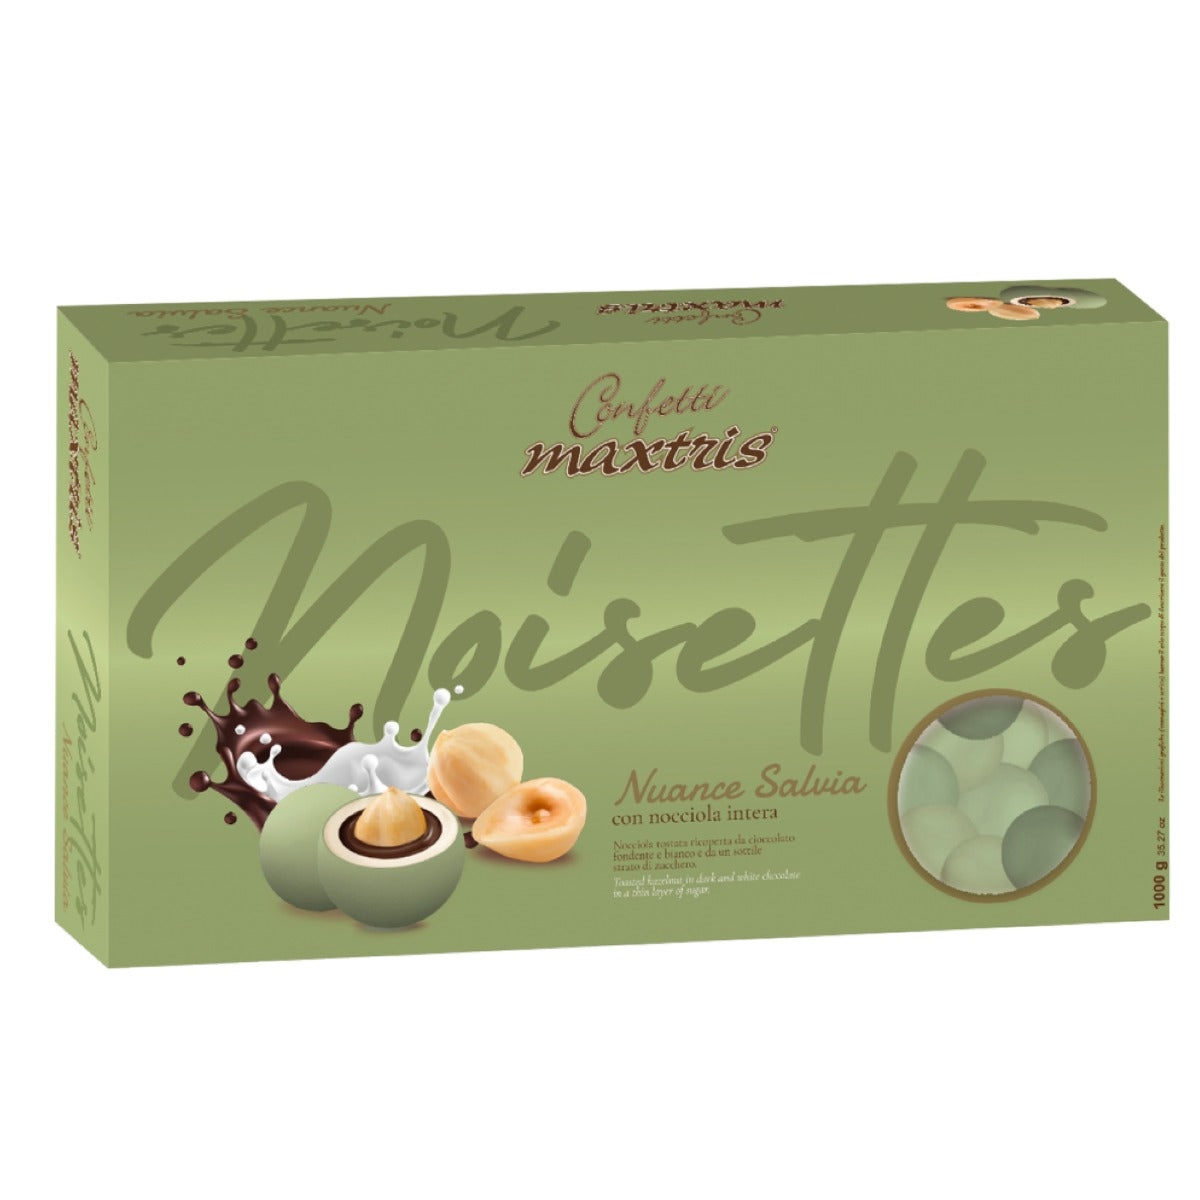 Confetti Maxtris ciocconocciola nuance salvia